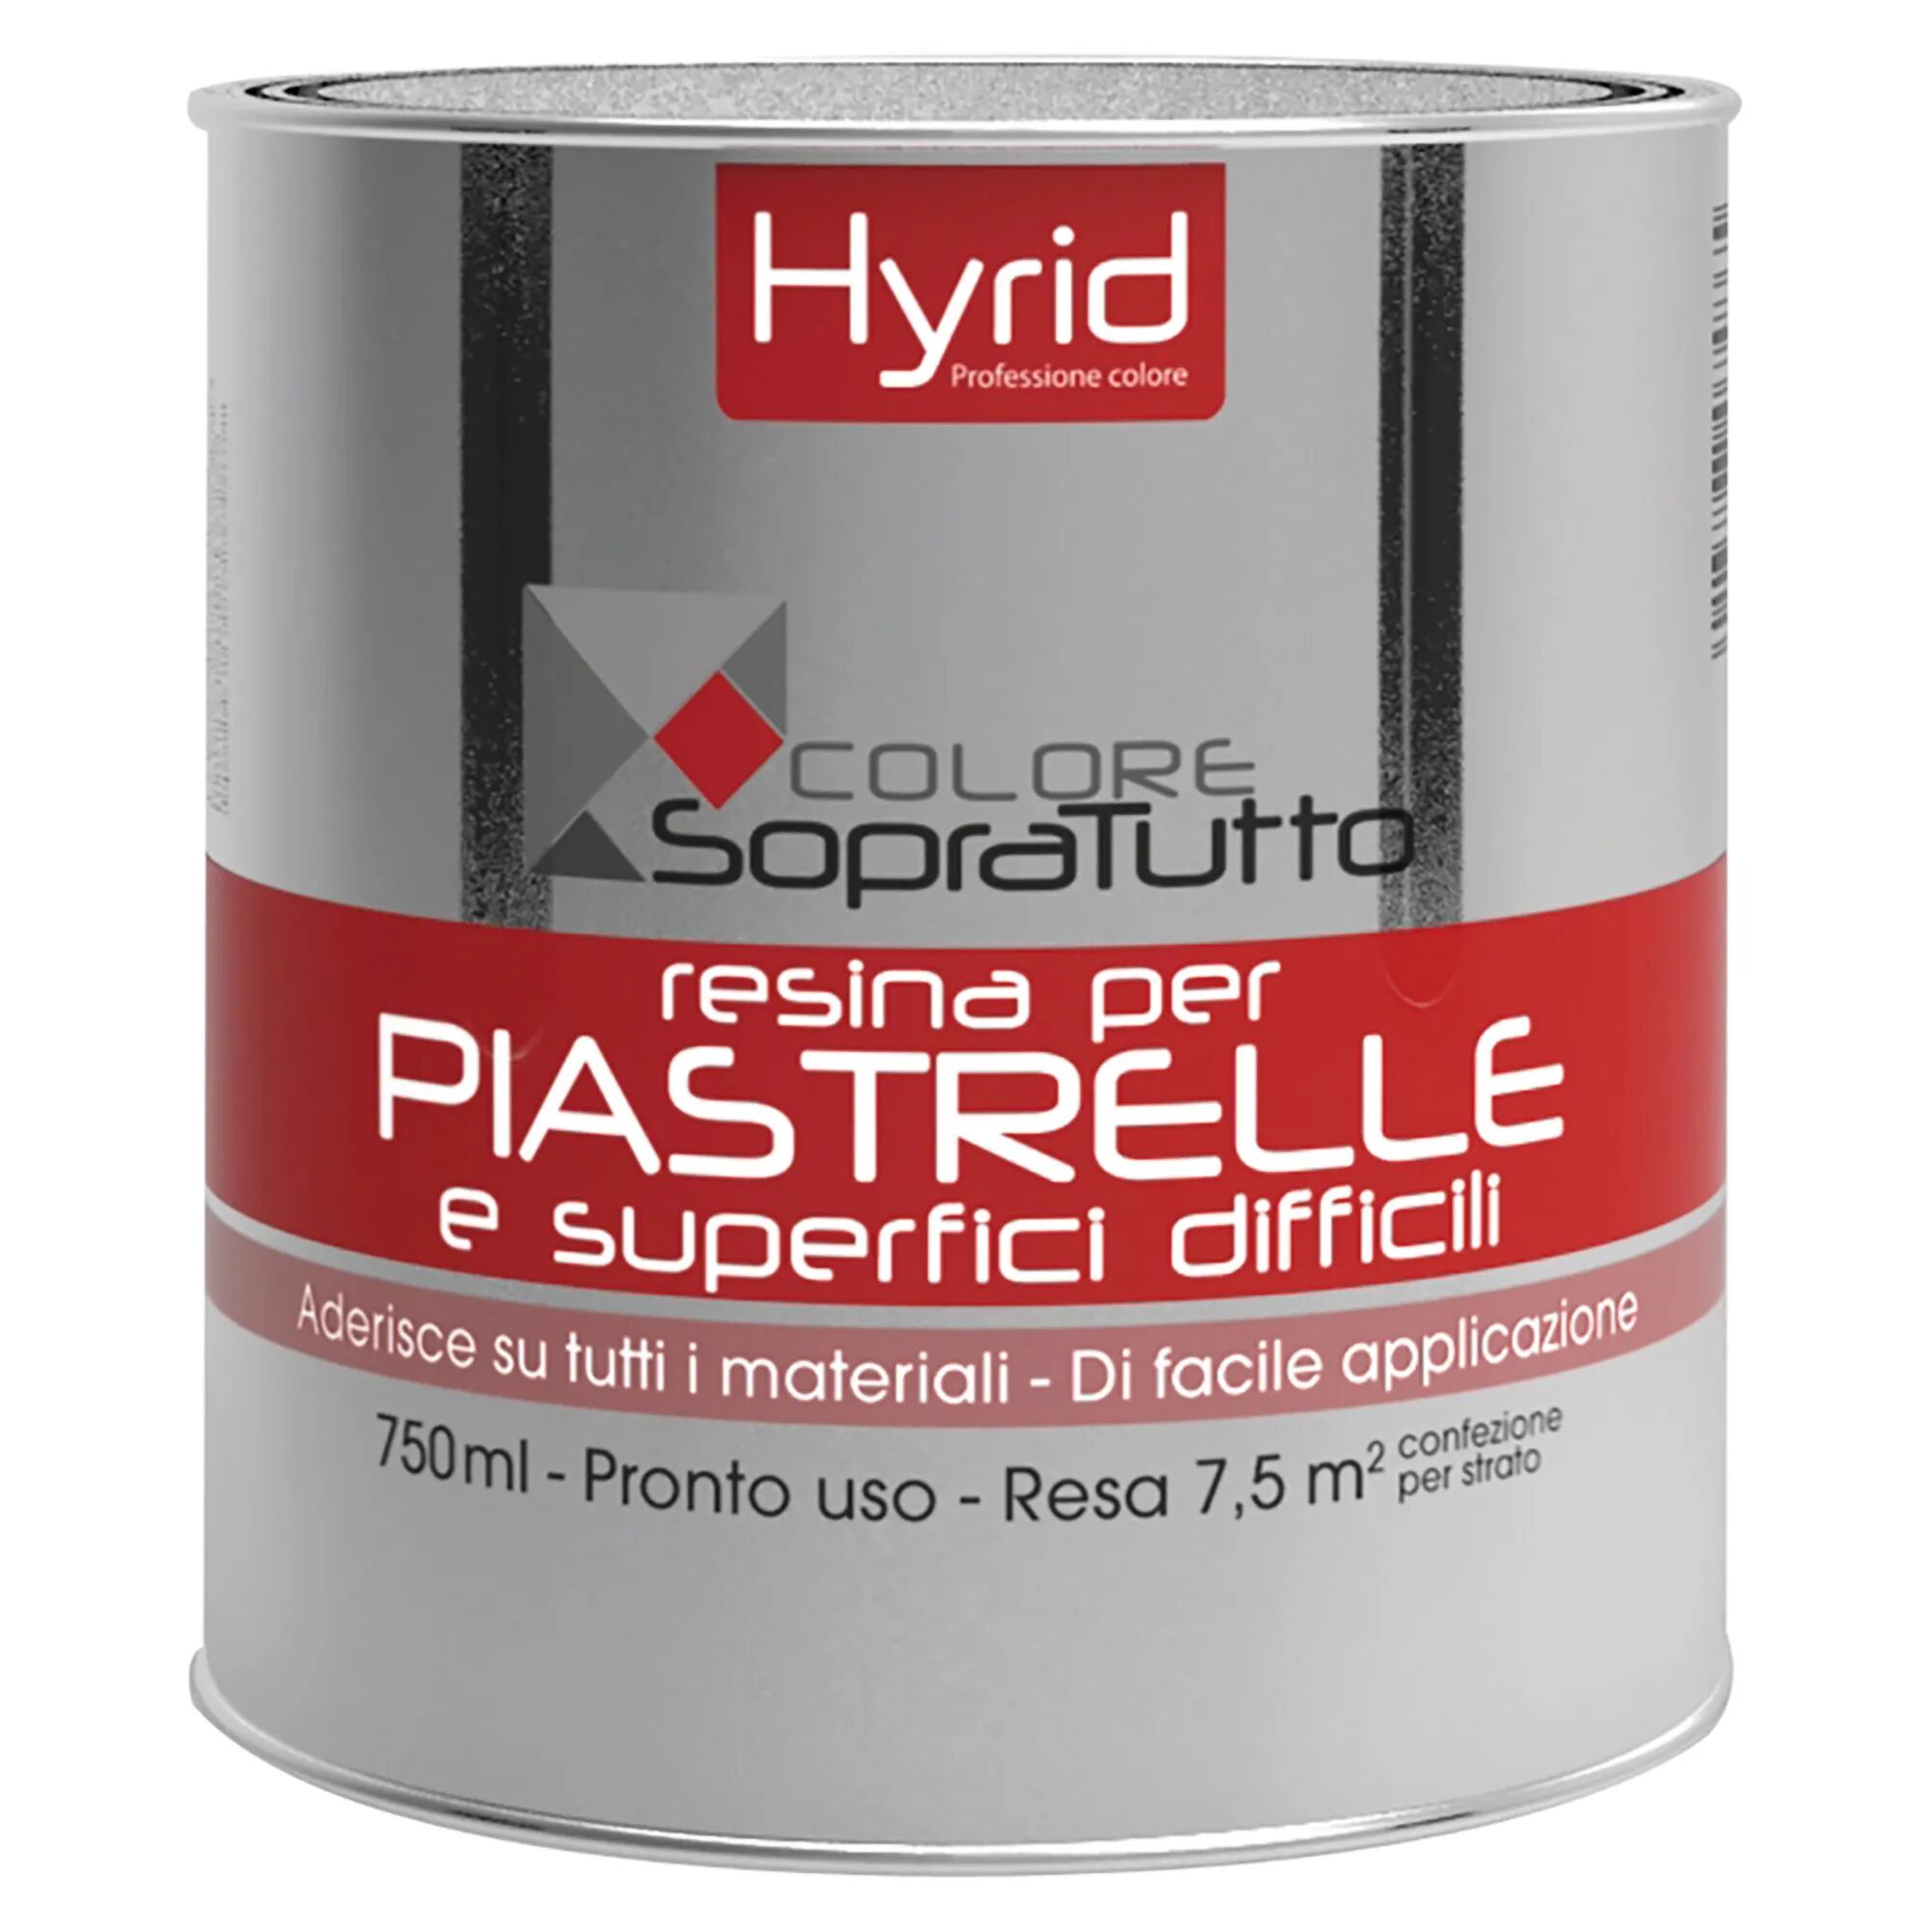 hyrid by covema resina piastrelle hyrid menta 750 ml per superfici difficili 10 m²  con 1 l pronto uso